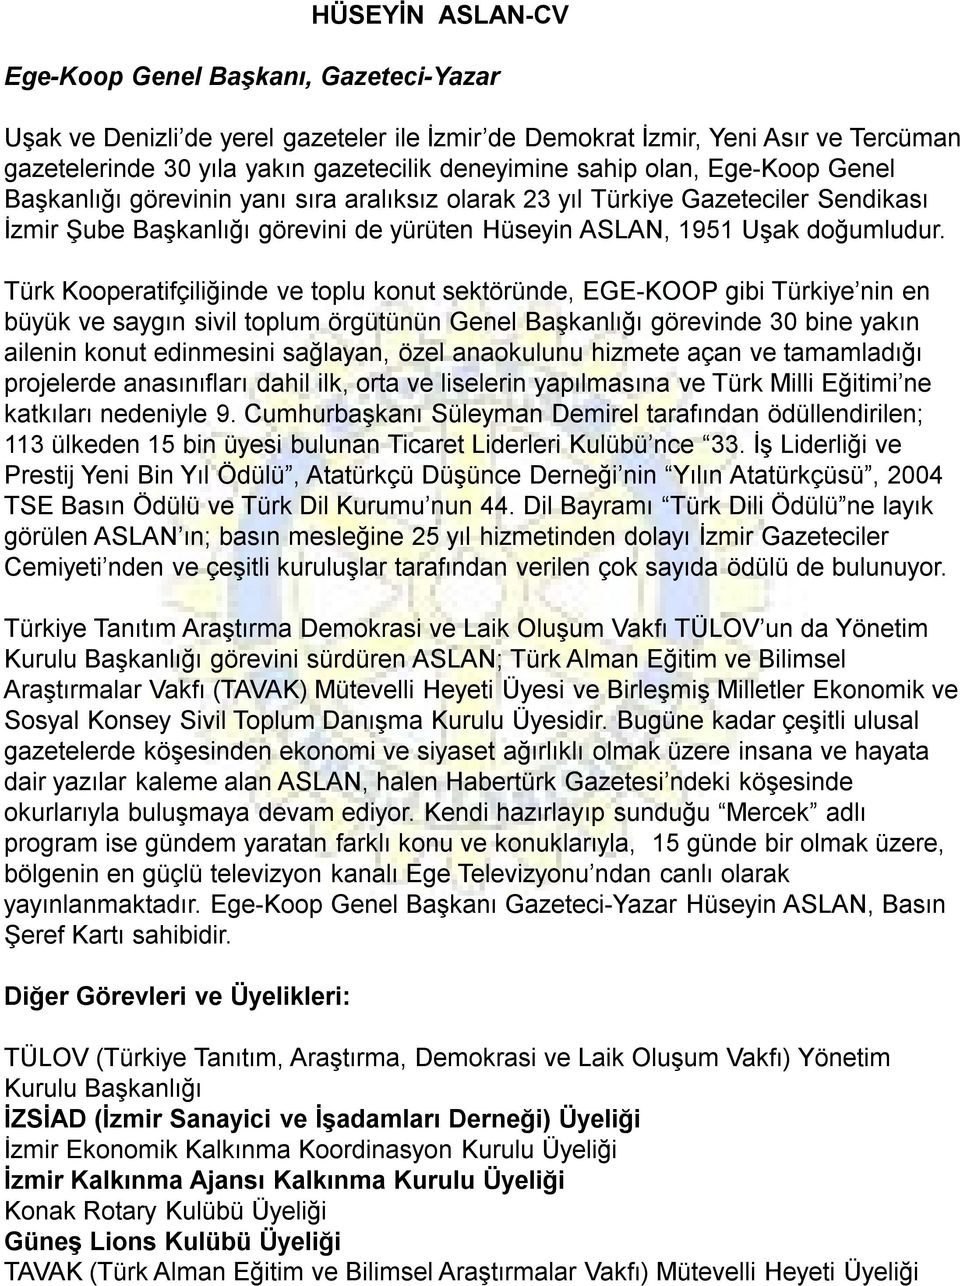 Türk Kooperatifçiliğinde ve toplu konut sektöründe, EGE-KOOP gibi Türkiye nin en büyük ve saygın sivil toplum örgütünün Genel Başkanlığı görevinde 30 bine yakın ailenin konut edinmesini sağlayan,